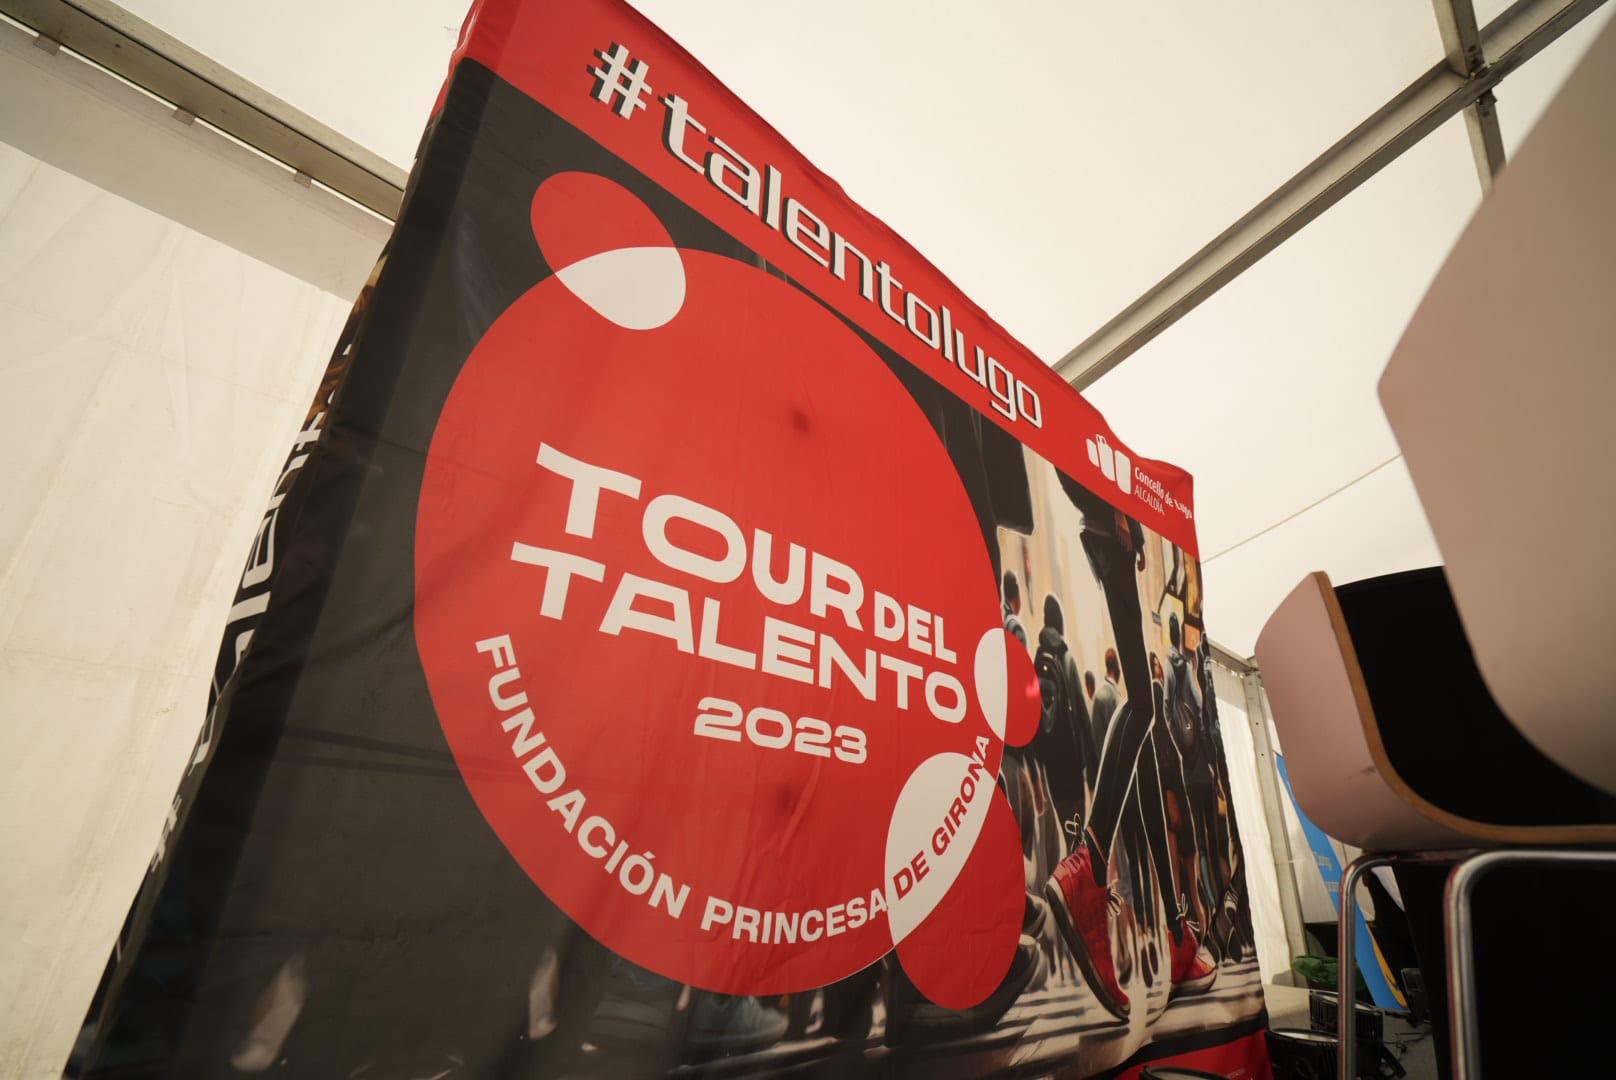 El arte, el empleo y la cultura, protagonistas de la primera jornada del Tour del Talento en Lugo